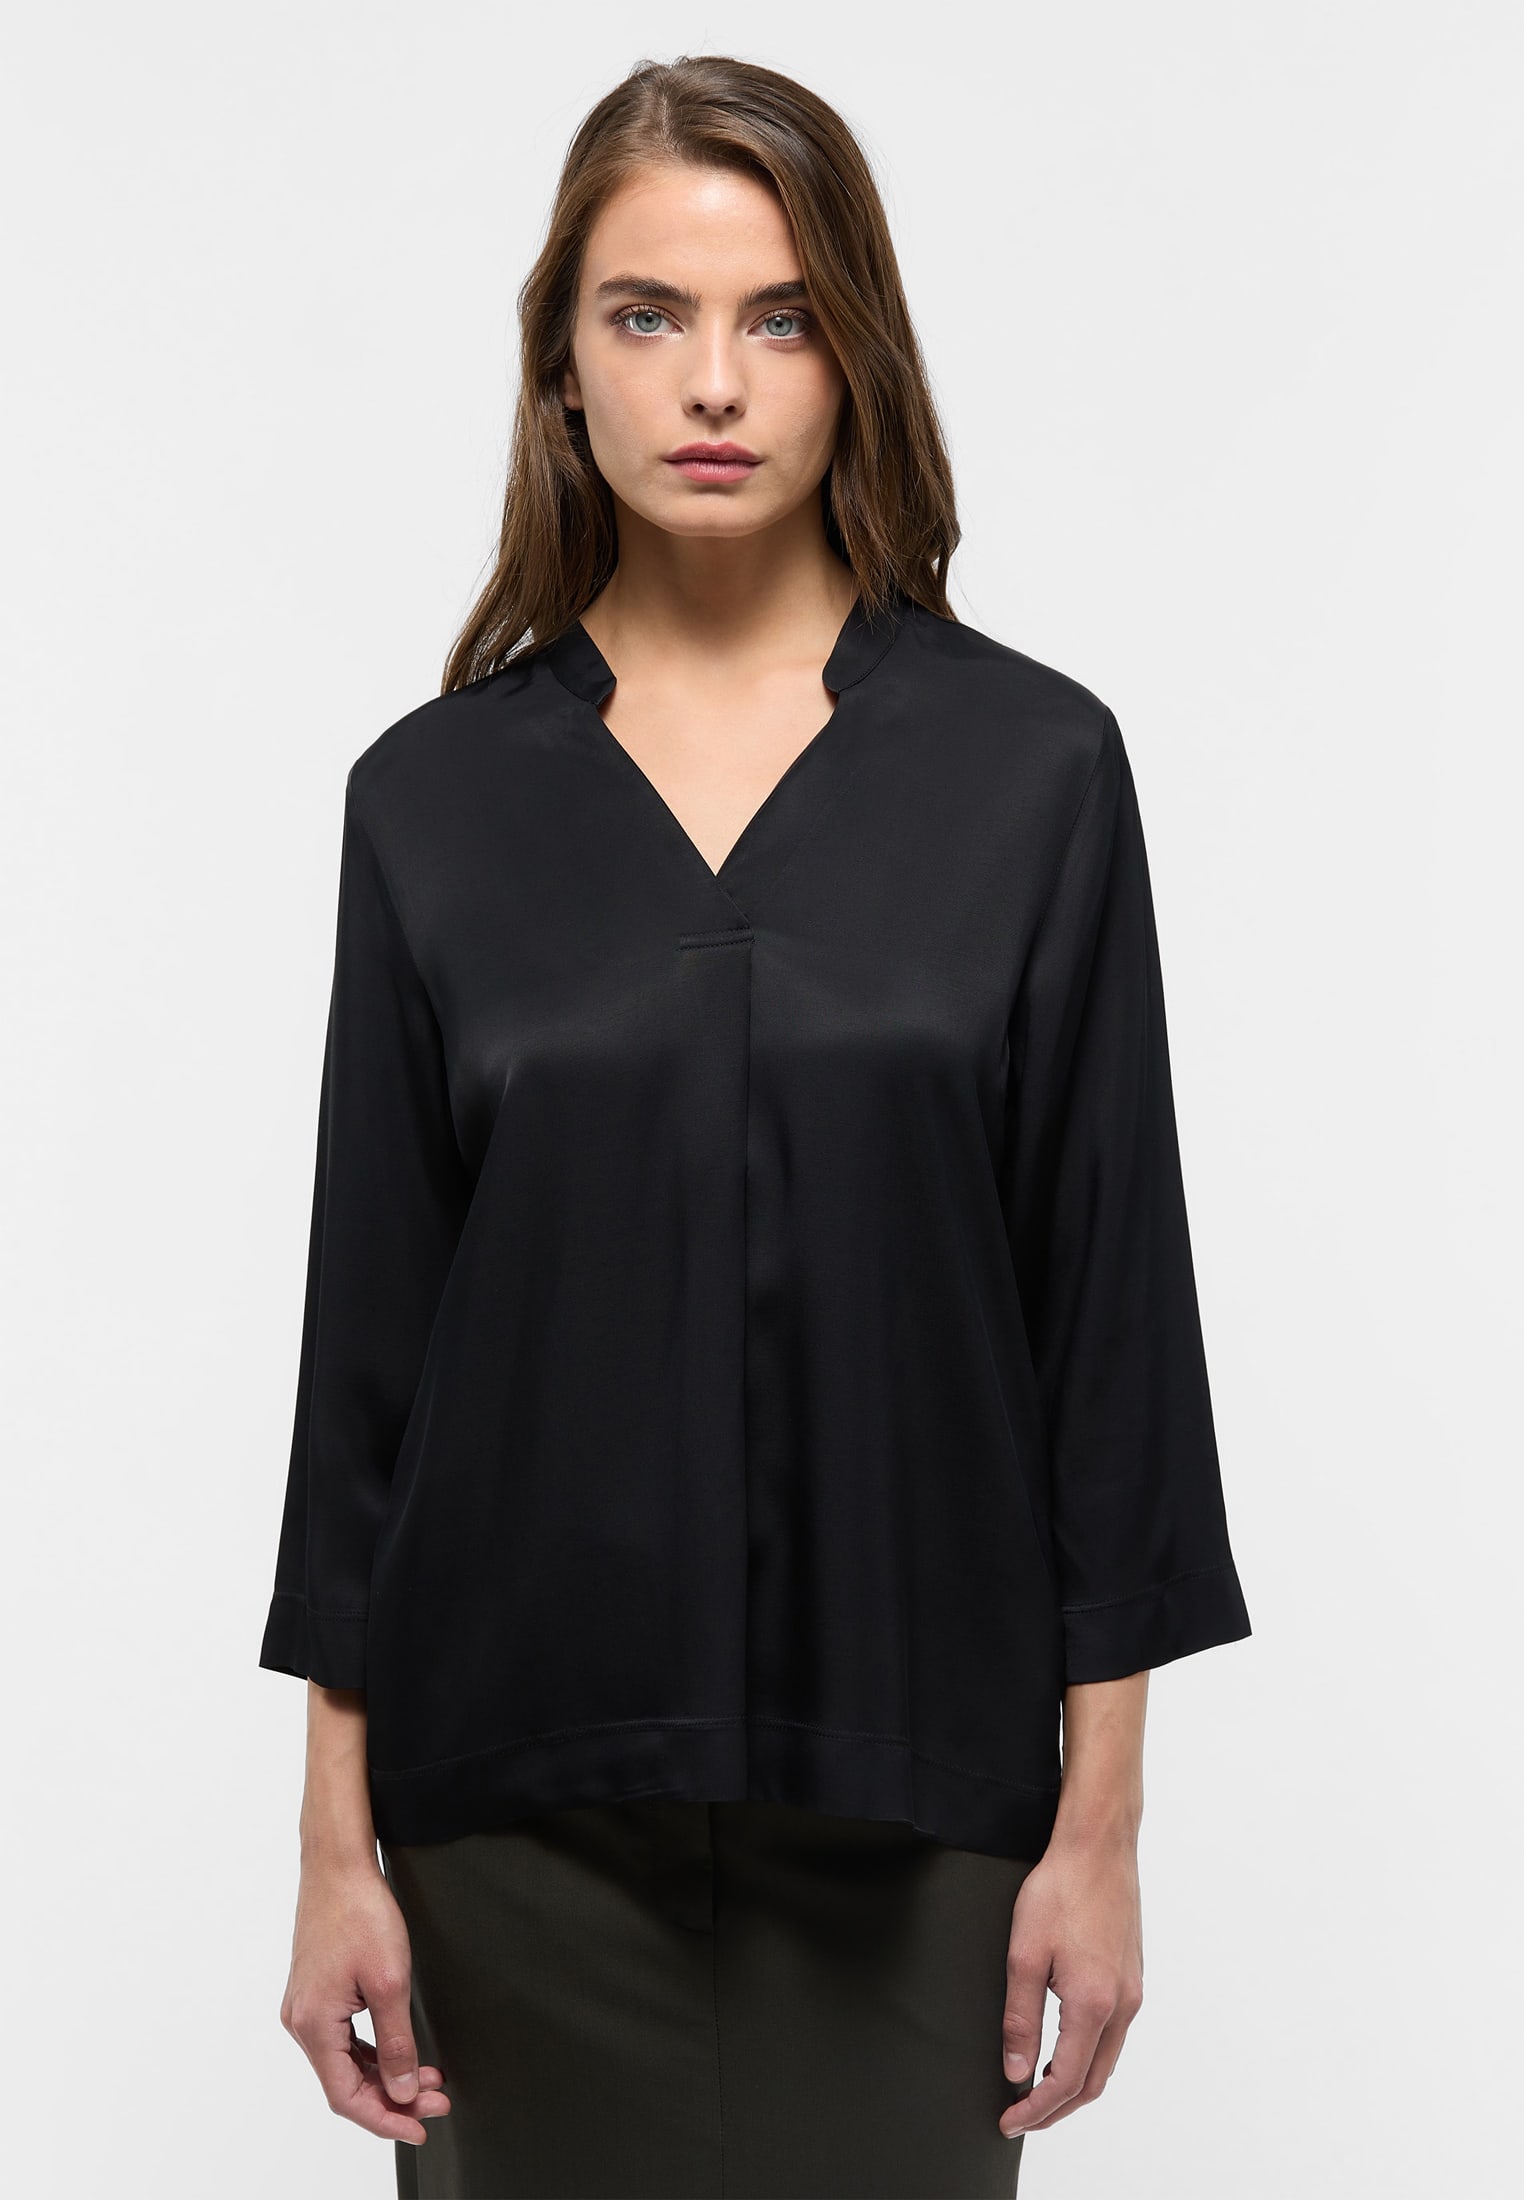 Viscose Shirt Bluse in schwarz unifarben | schwarz | 38 | 3/4-Arm |  2BL04358-03-91-38-3/4